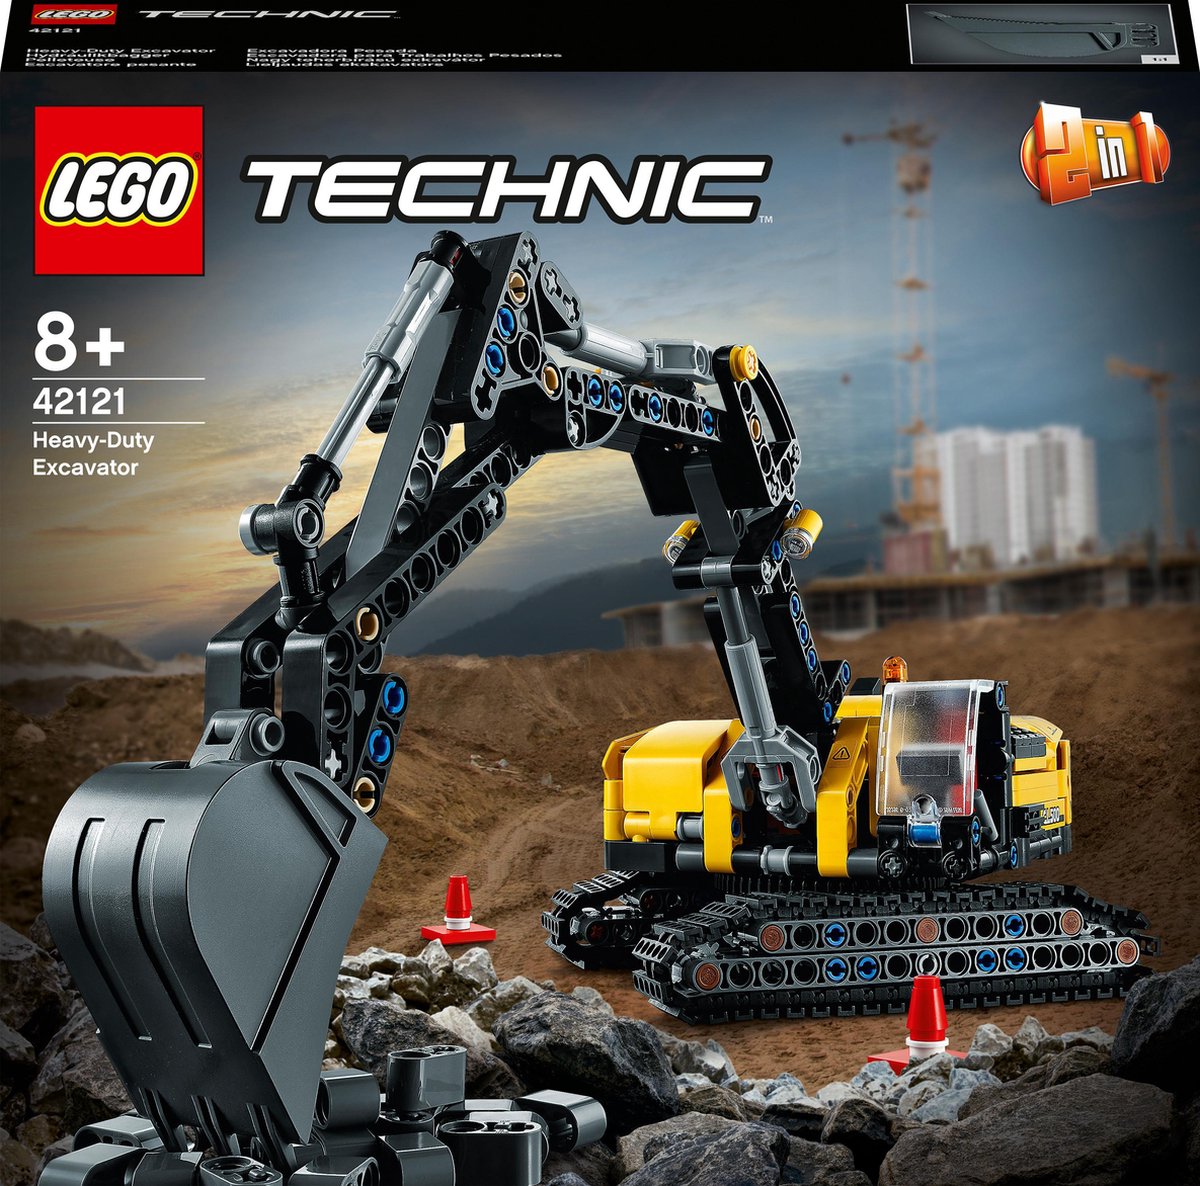 Bulldozer Lego Technic - Jaune - Extérieur - Enfant - A partir de